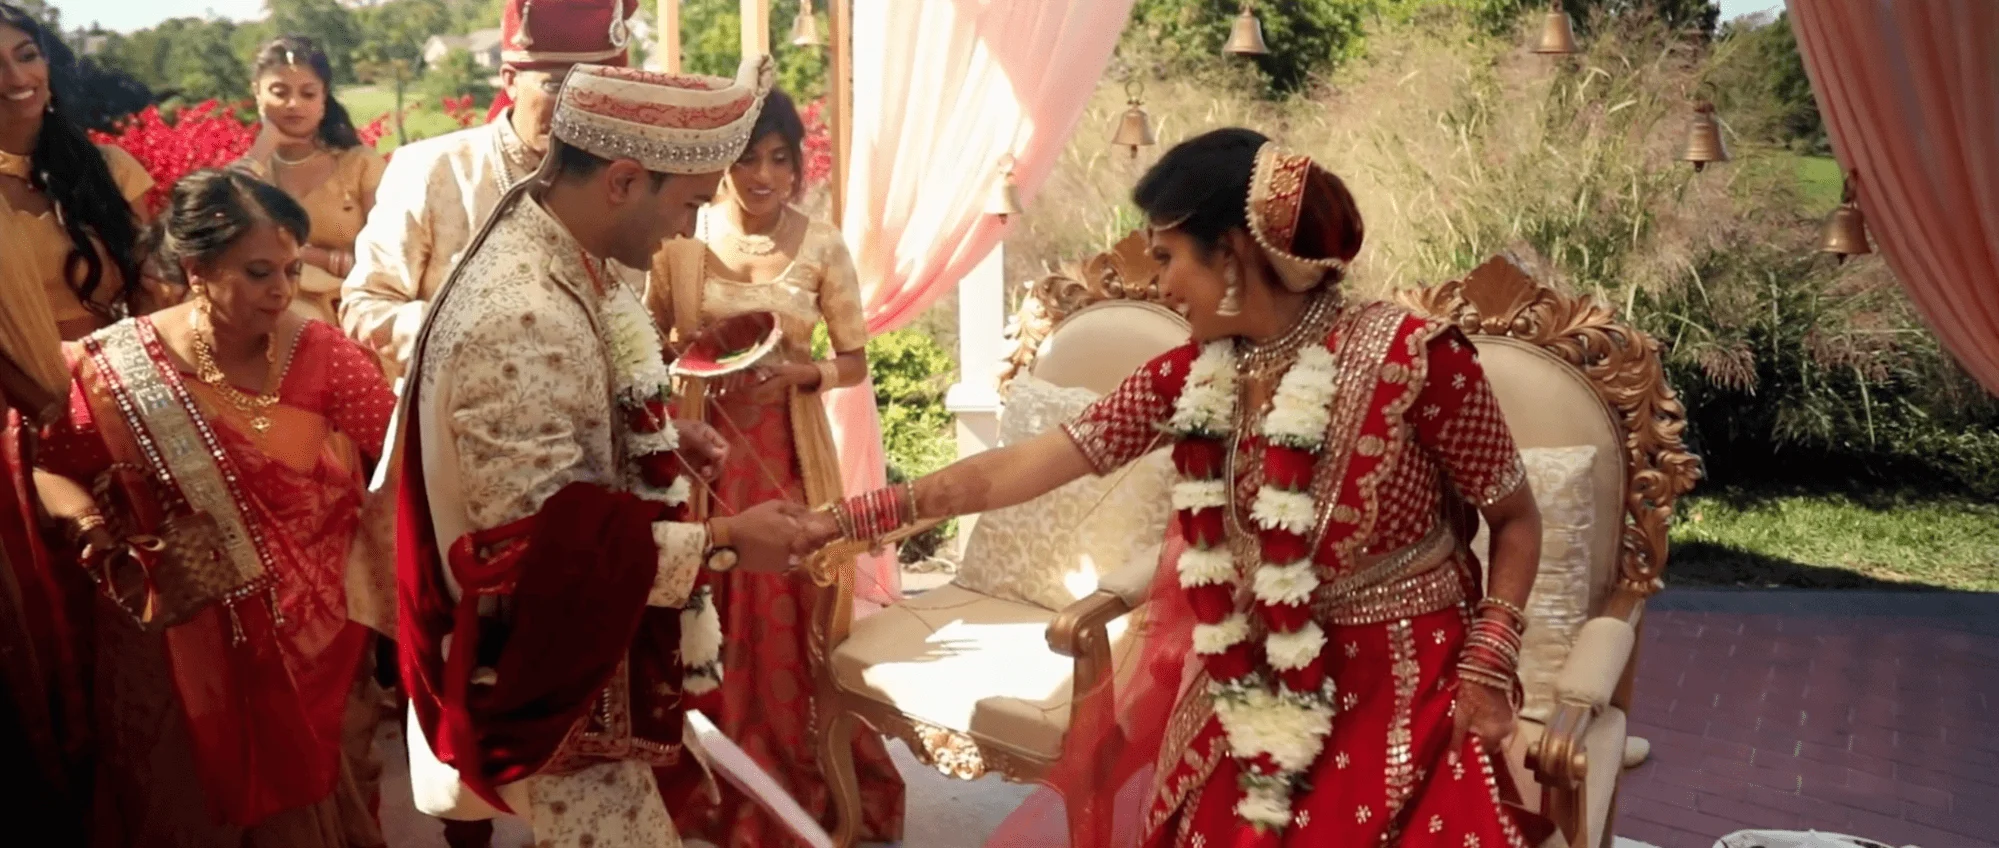 indian wedding couple outdoor brooklake celebration